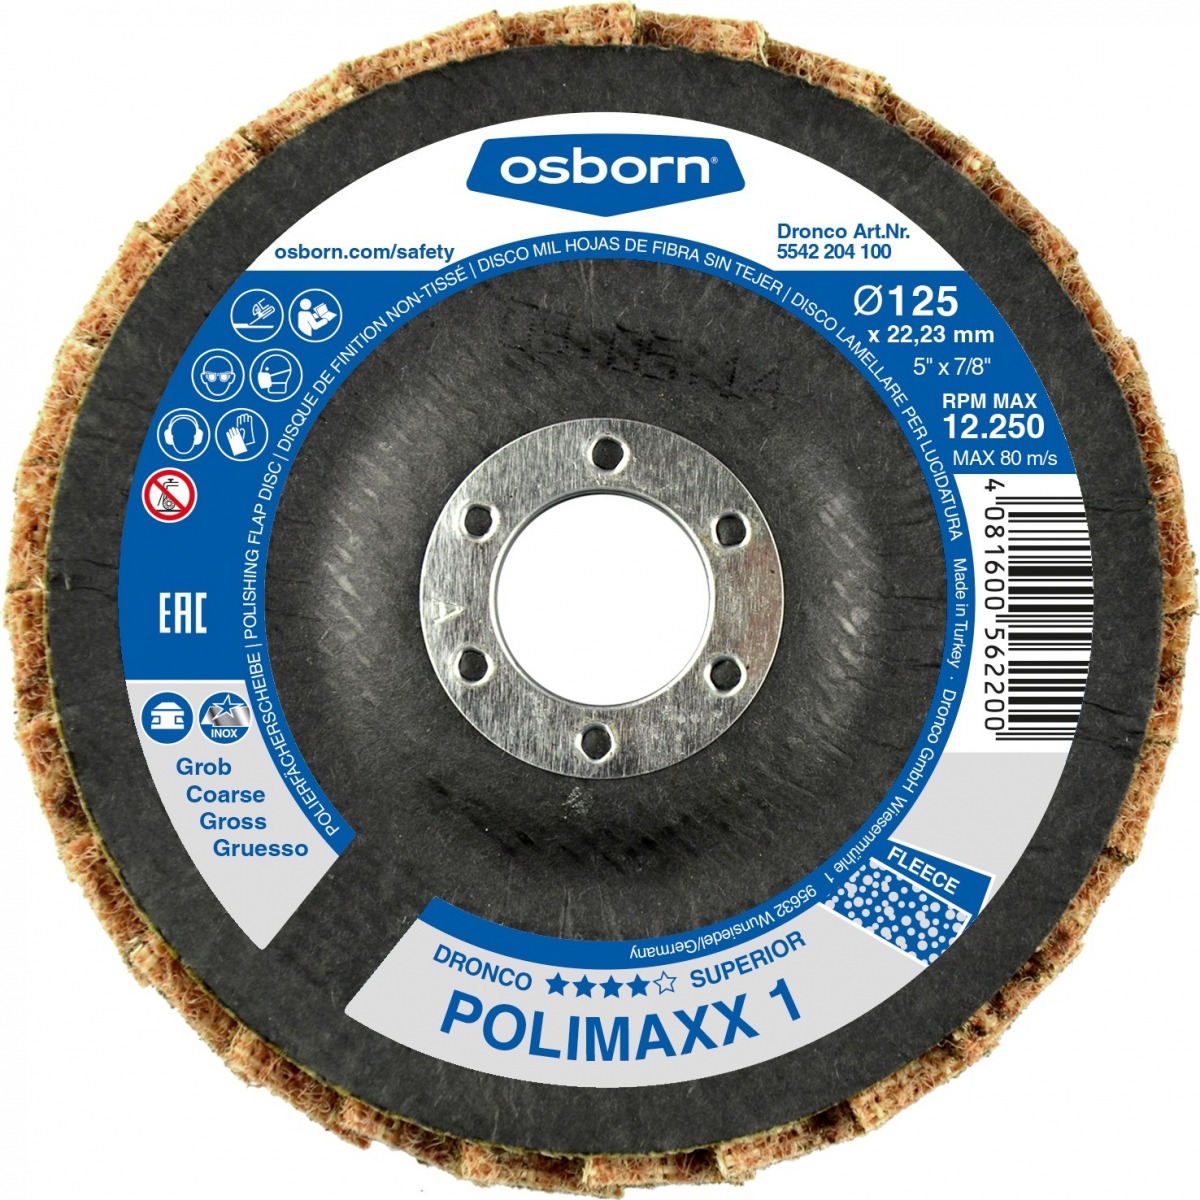 Discos de láminas abrasivas fibra sin tejer de gran basto POLIMAXX 1 DRO-5541204100 | DISCOS DE CORTE